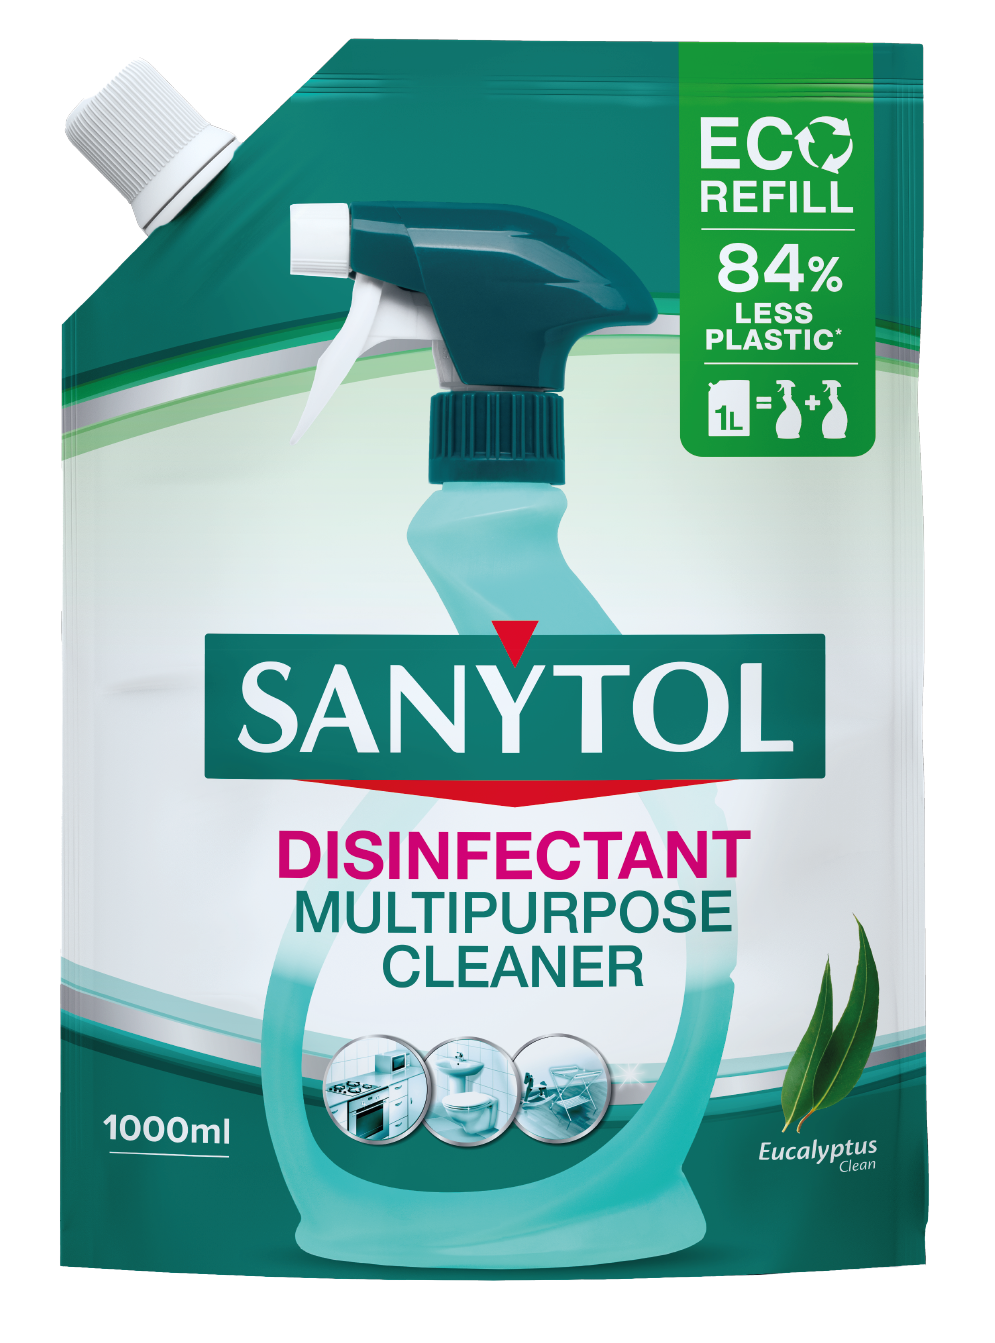 Sanytol - 33636010 - Désinfectant du Linge - 500 ml - Lot de 3